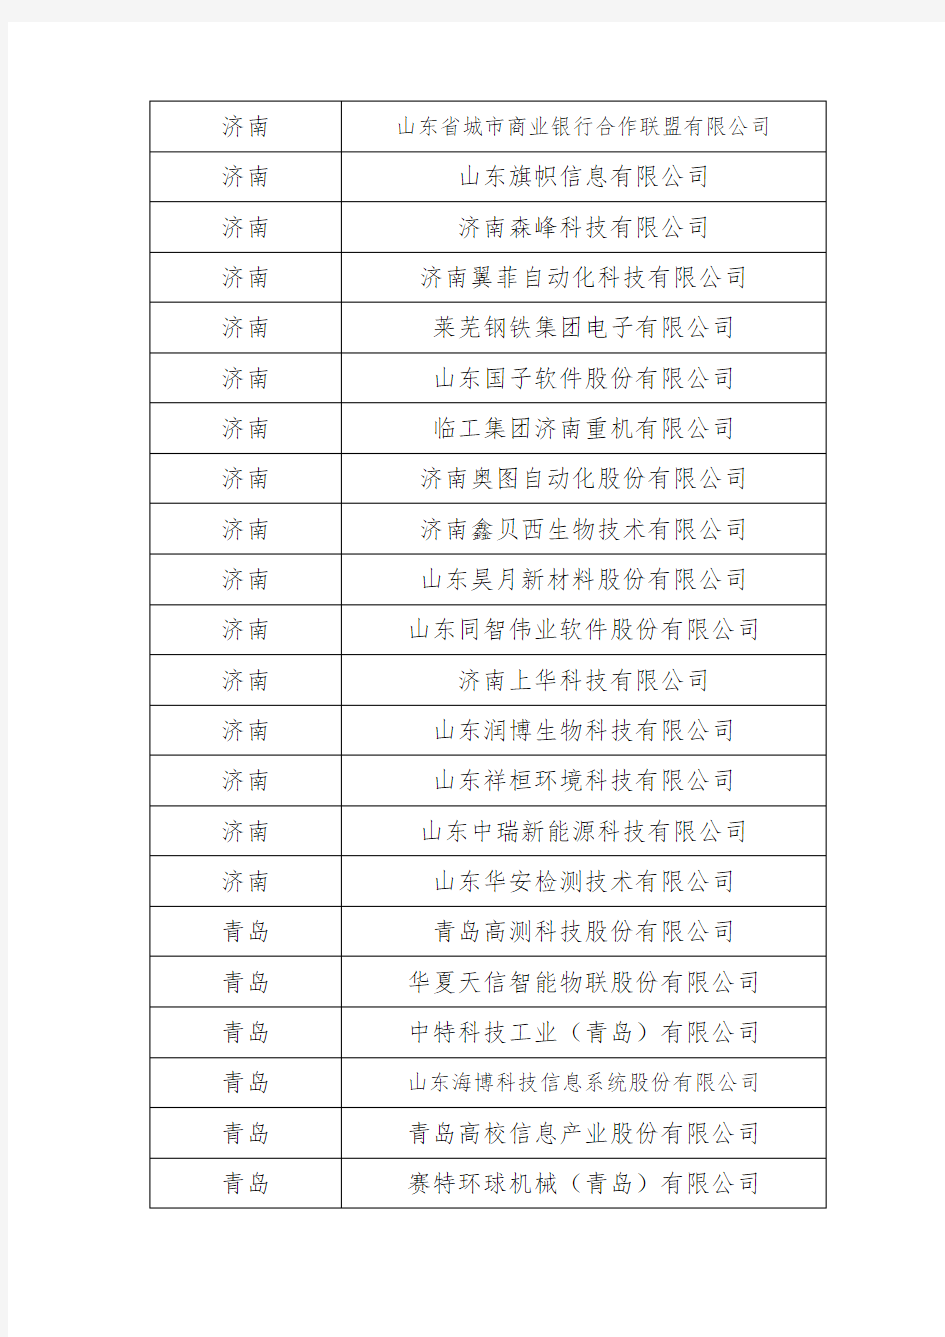 山东省第三批瞪羚企业名单